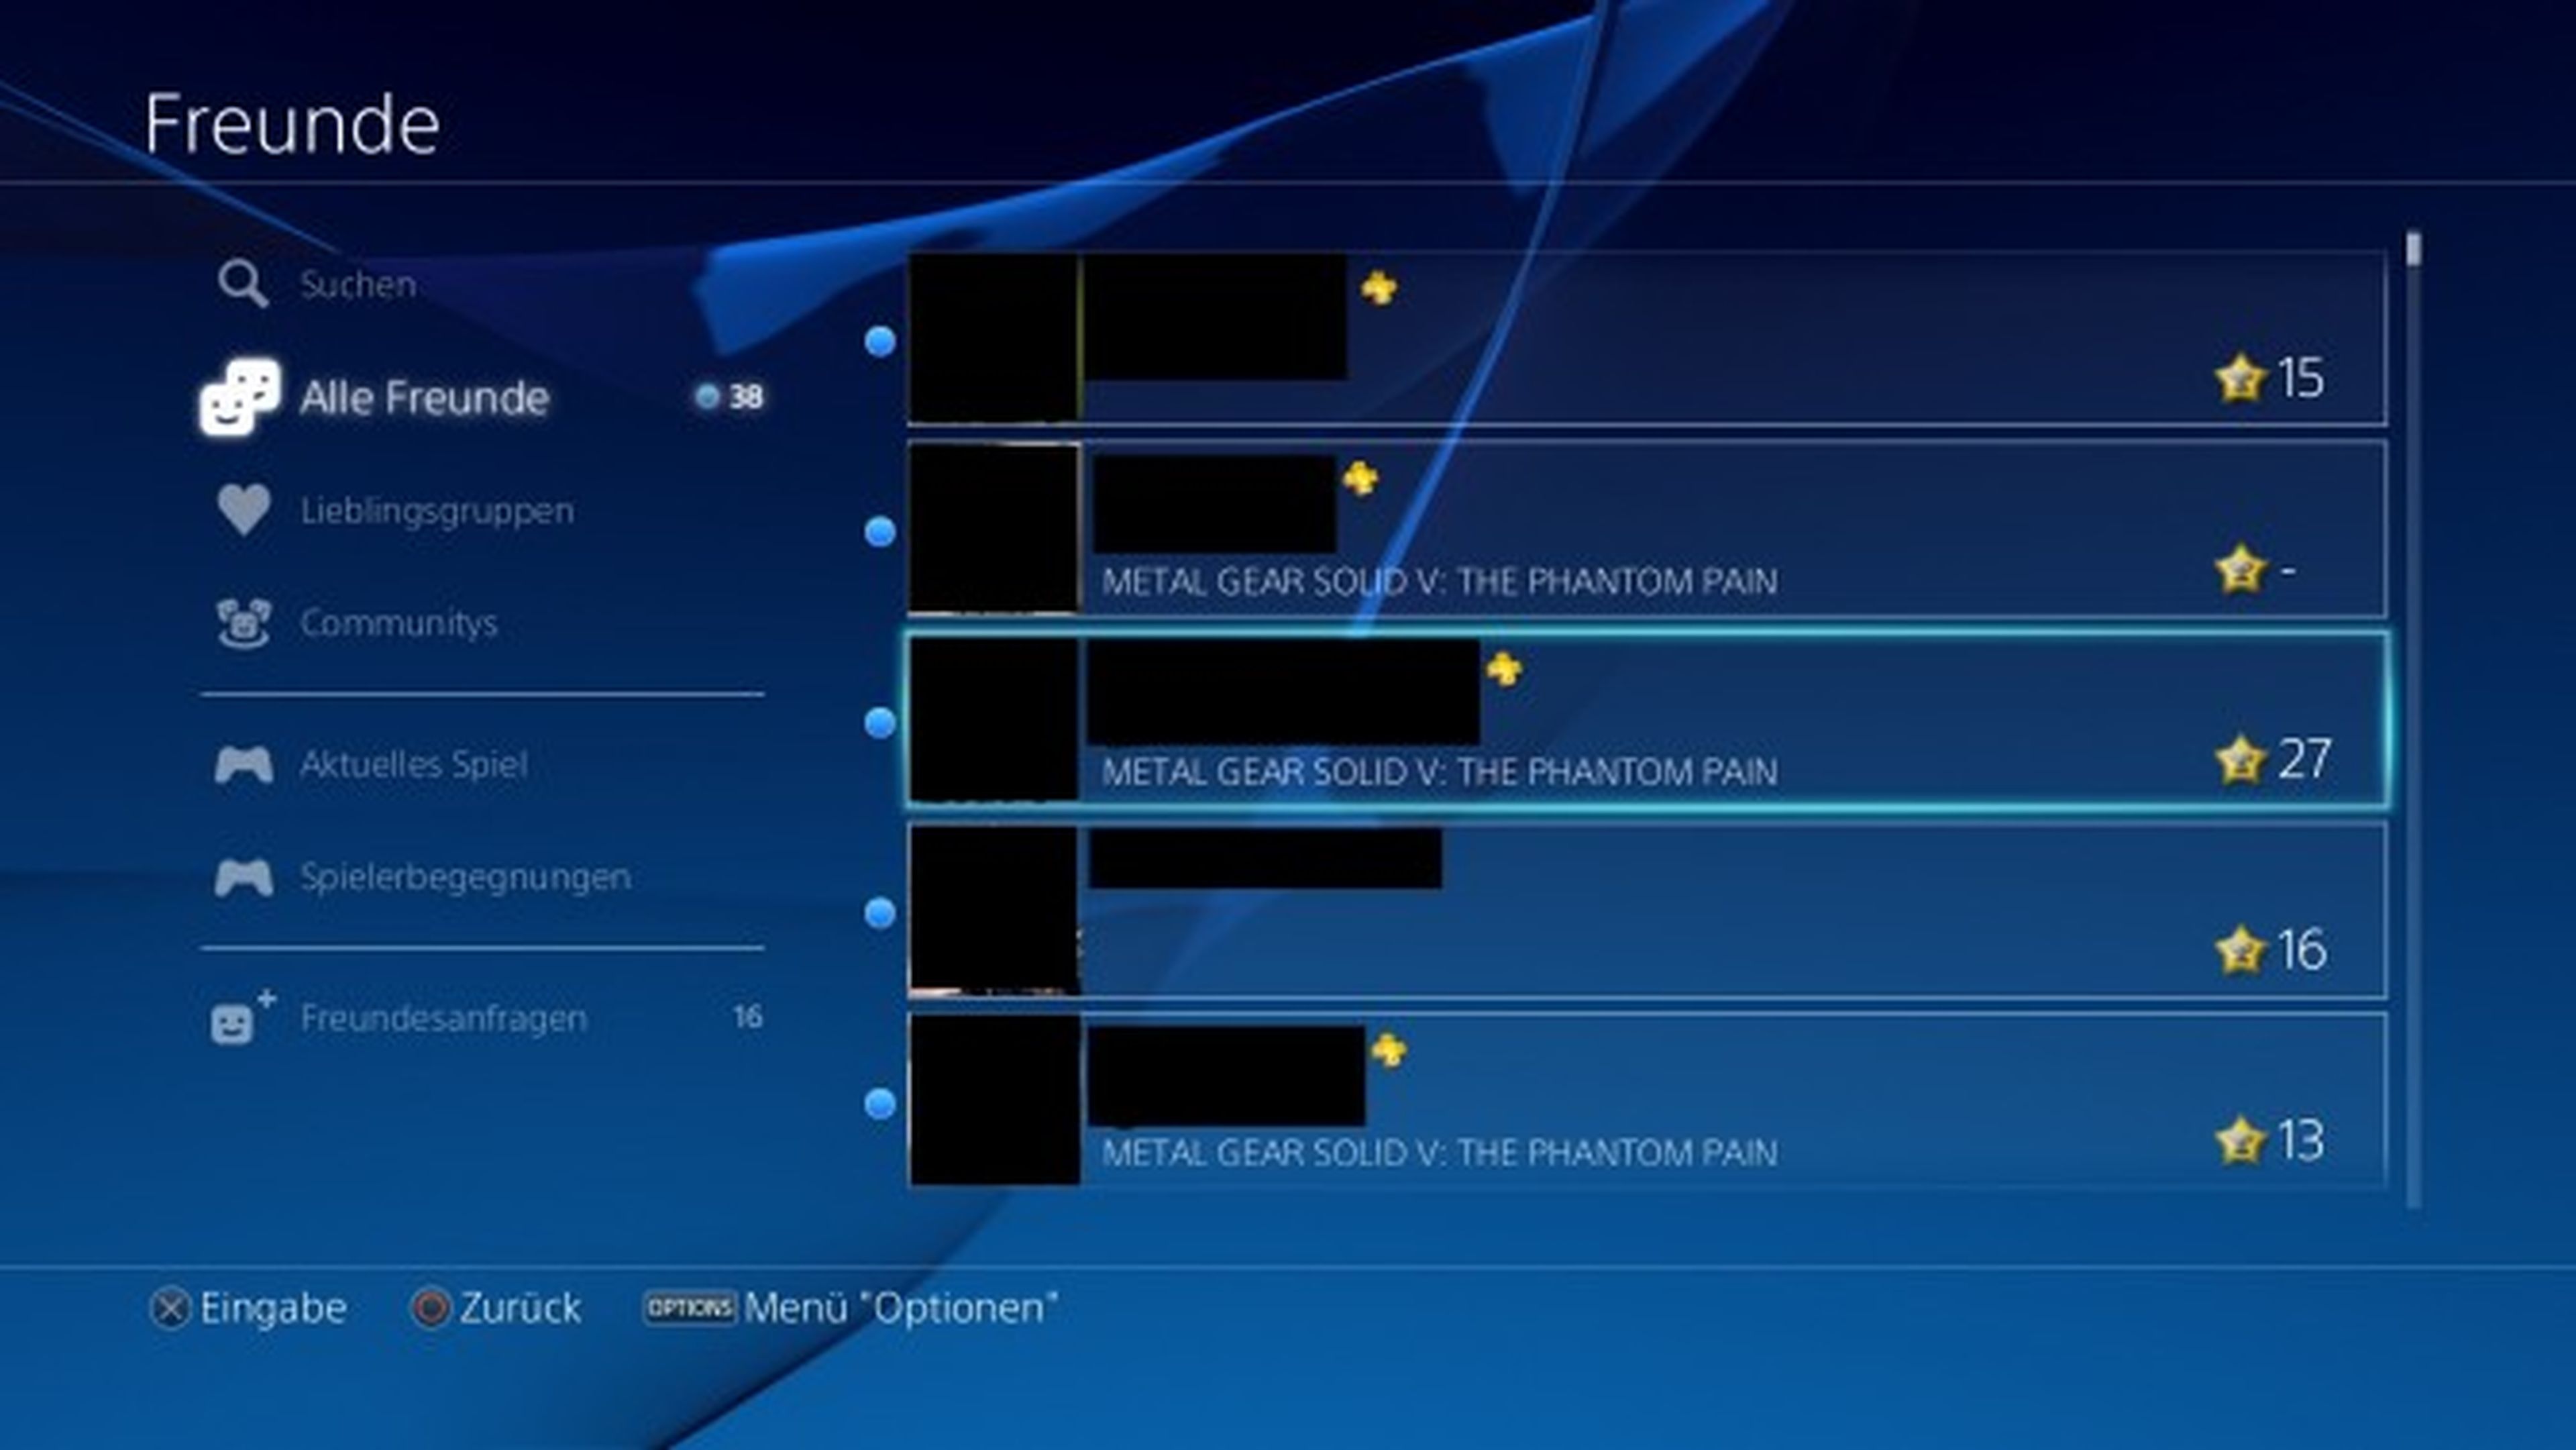 El firmware 3.0 de PS4 se muestra en imágenes